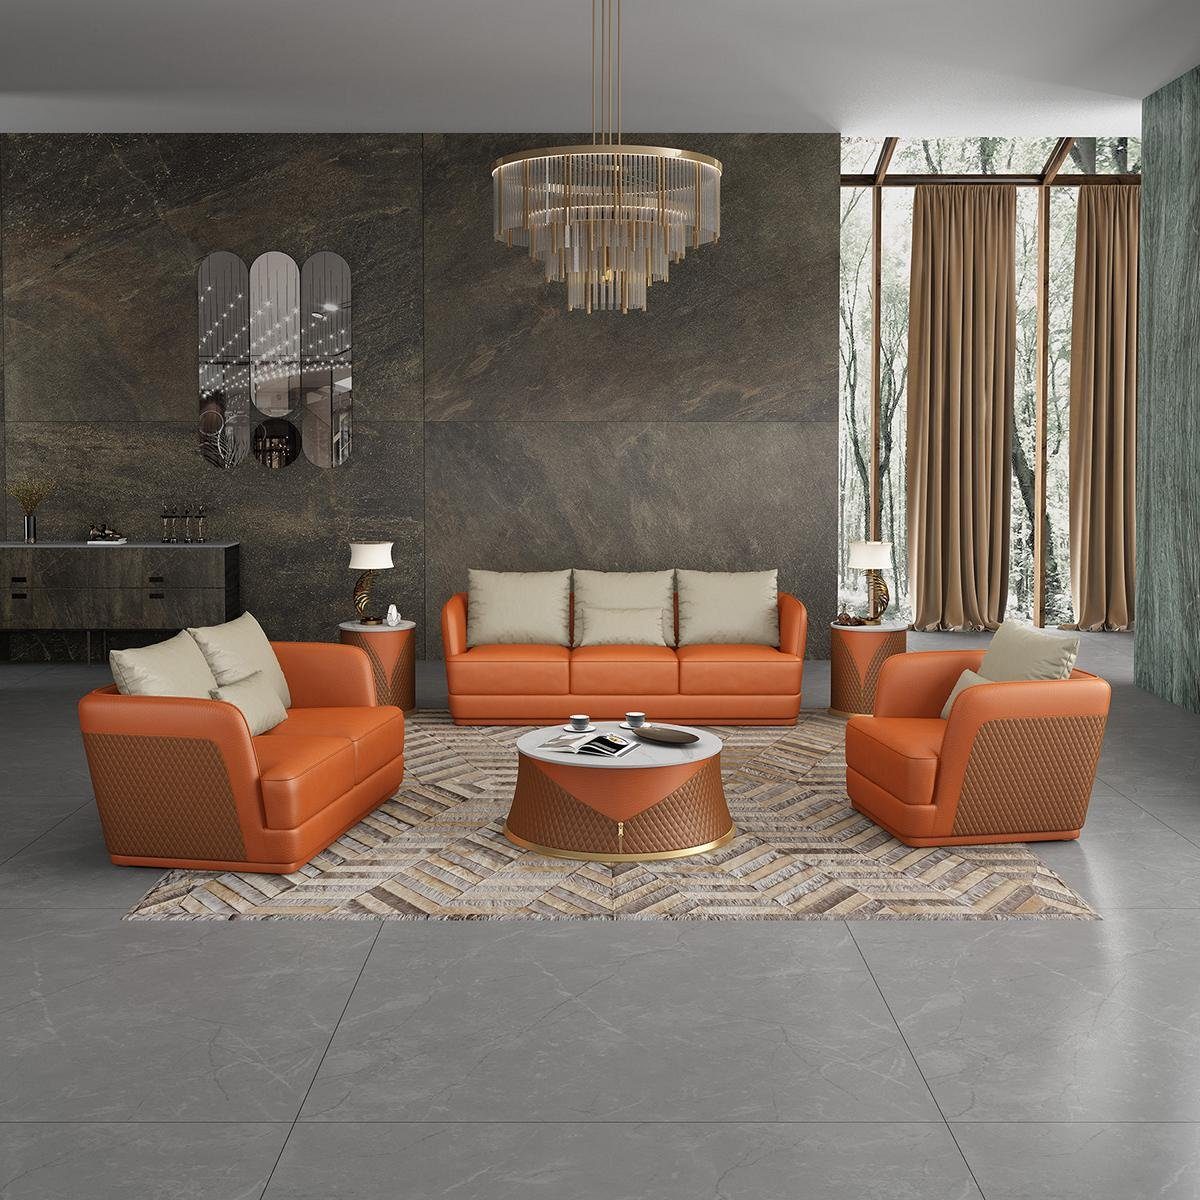 JVmoebel Wohnzimmer-Set, Ledersofa Couch Wohnlandschaft 3 2 1 Sitzer Garnitur Design Modern Orange